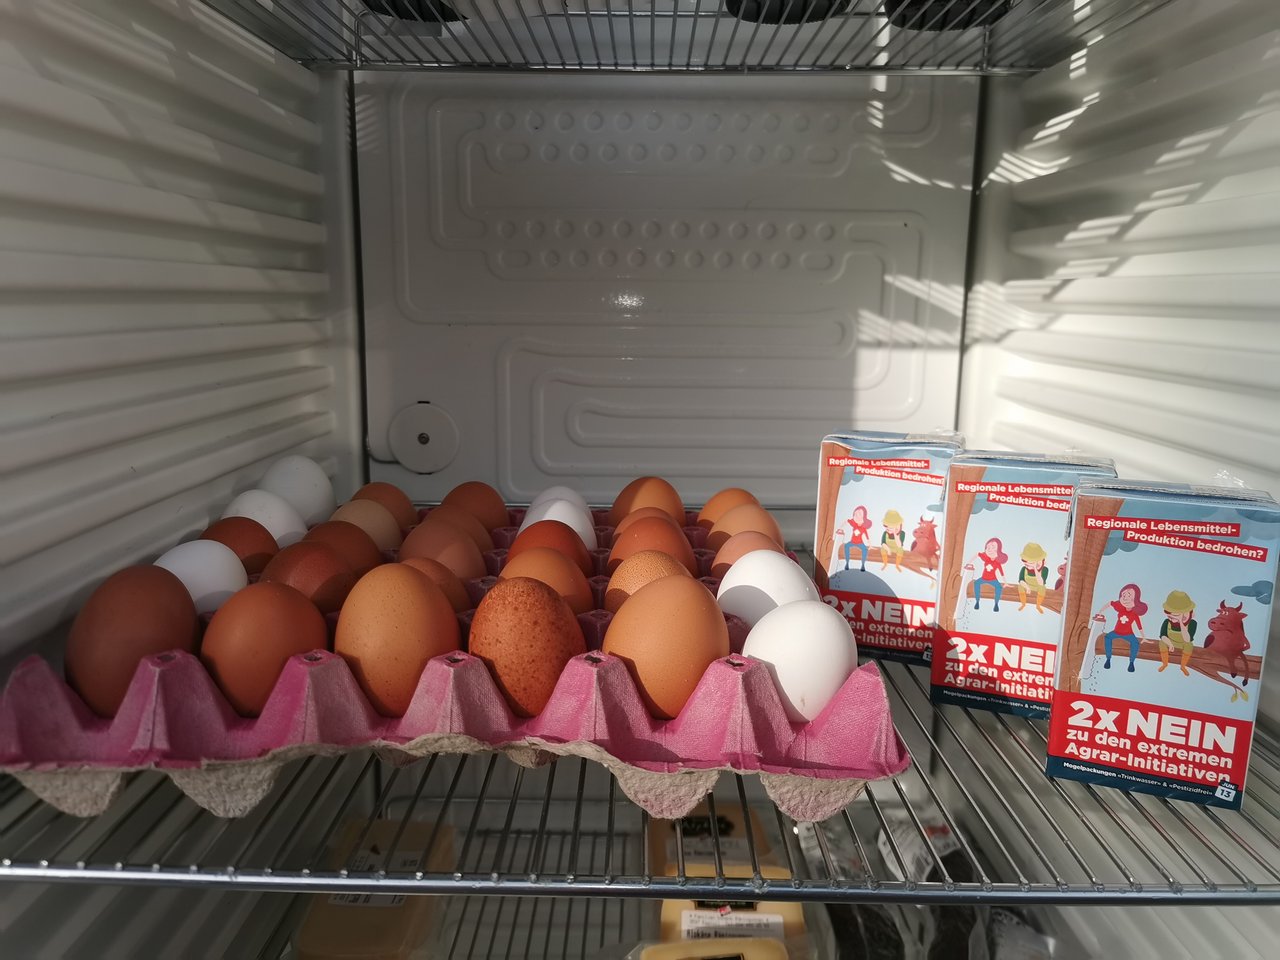 SChweizer Eier im Kühlschrank des Direktvermarkters. Was haben sie mit der Trinwasser-Initiative zu tun? (Bild sb)